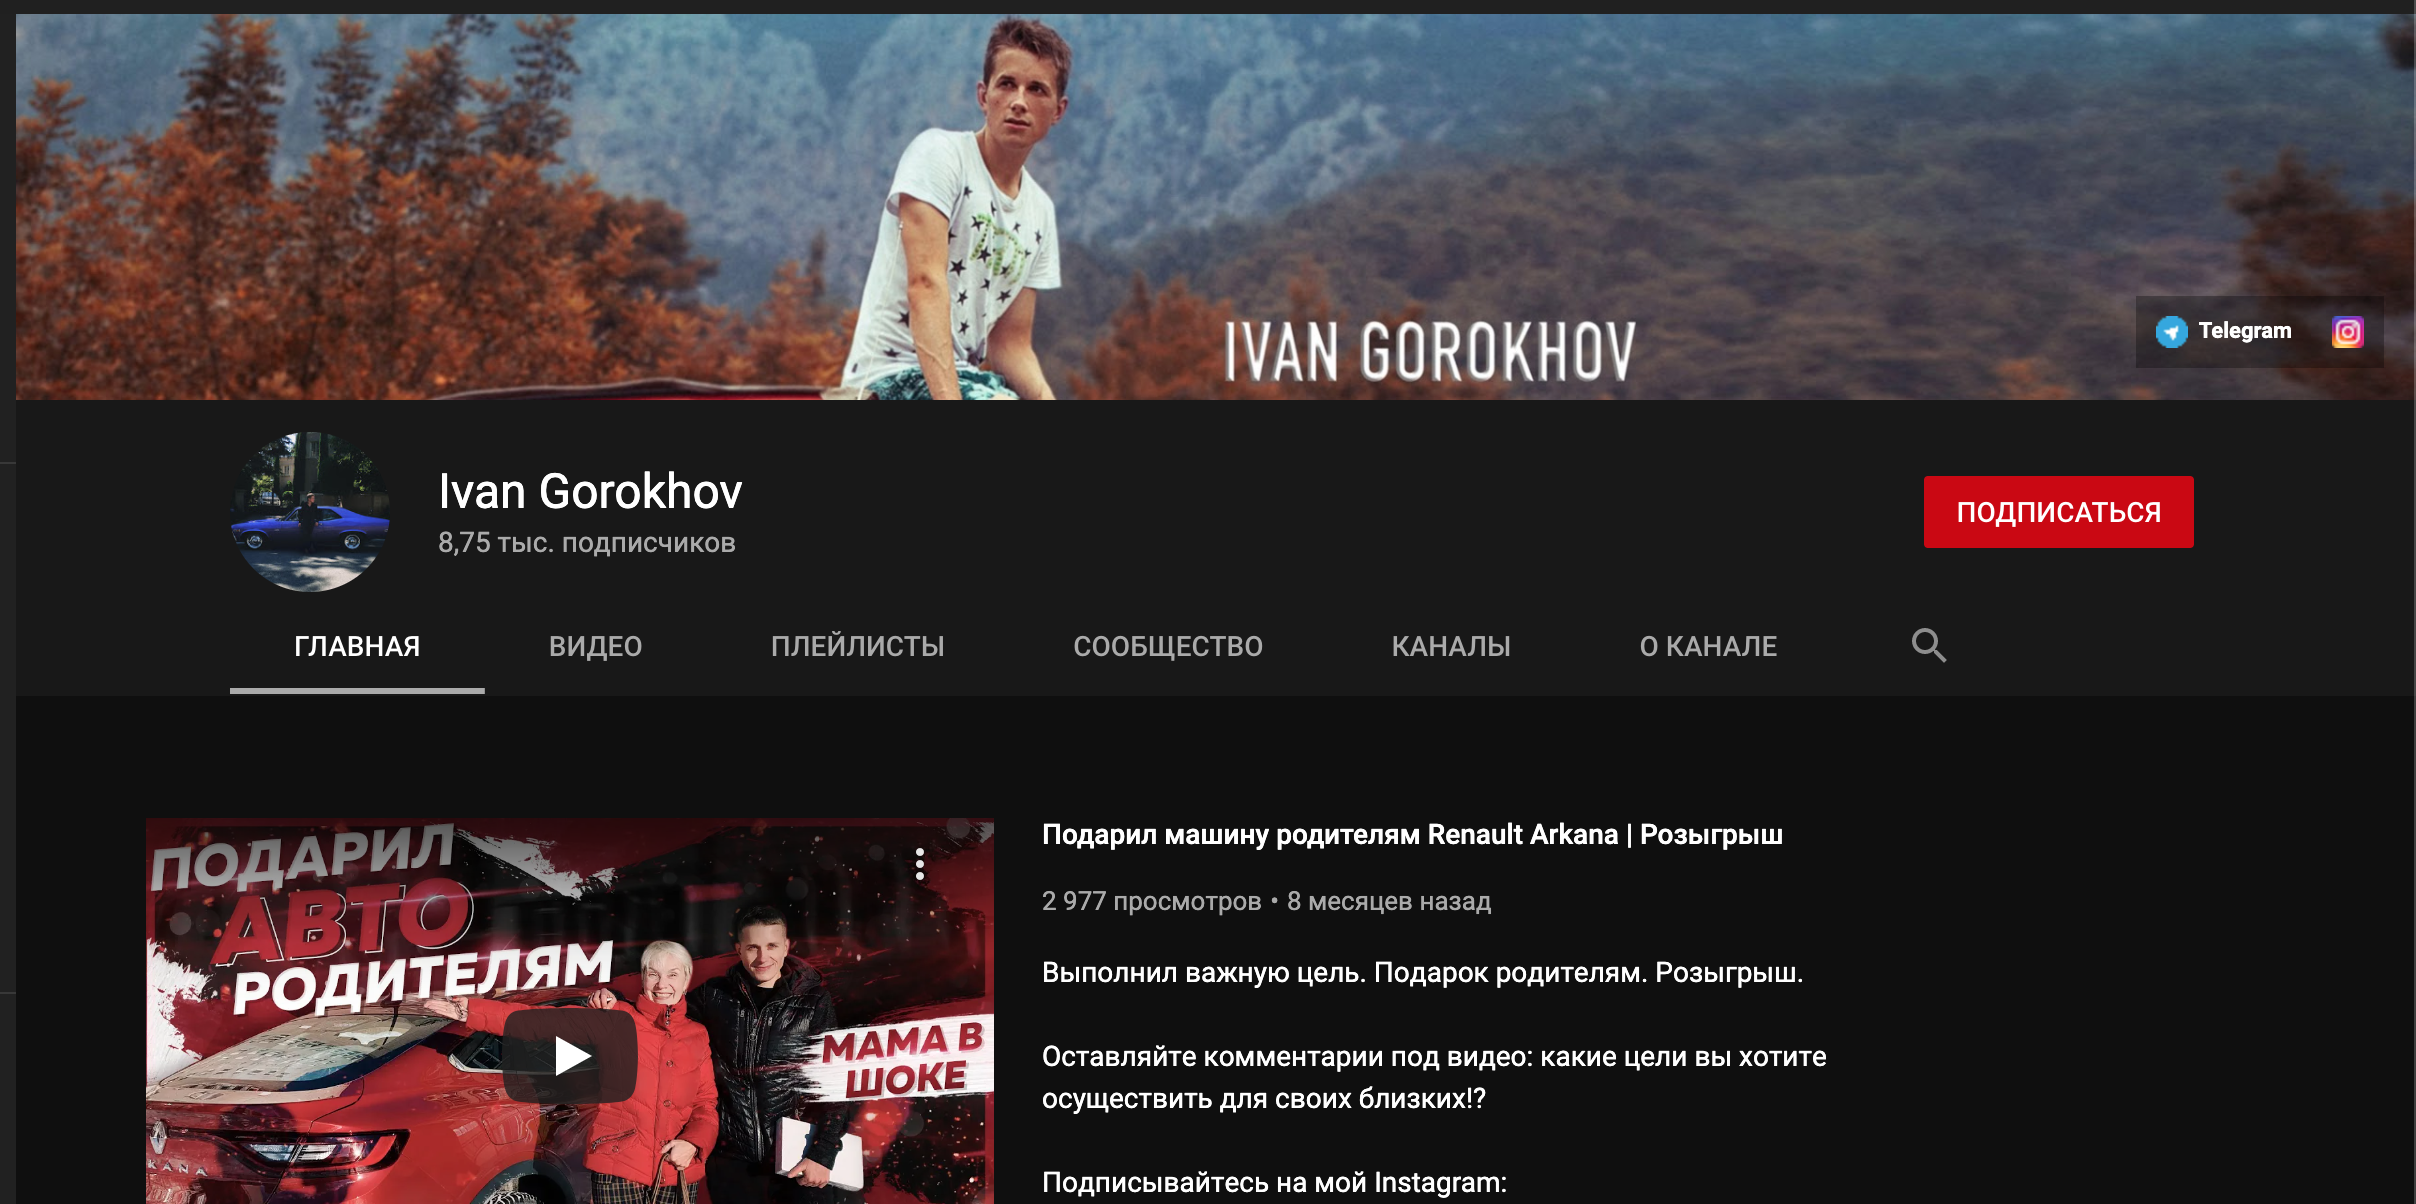 Ютуб канал Ивана Горохова (IVAN GOROKHOV)